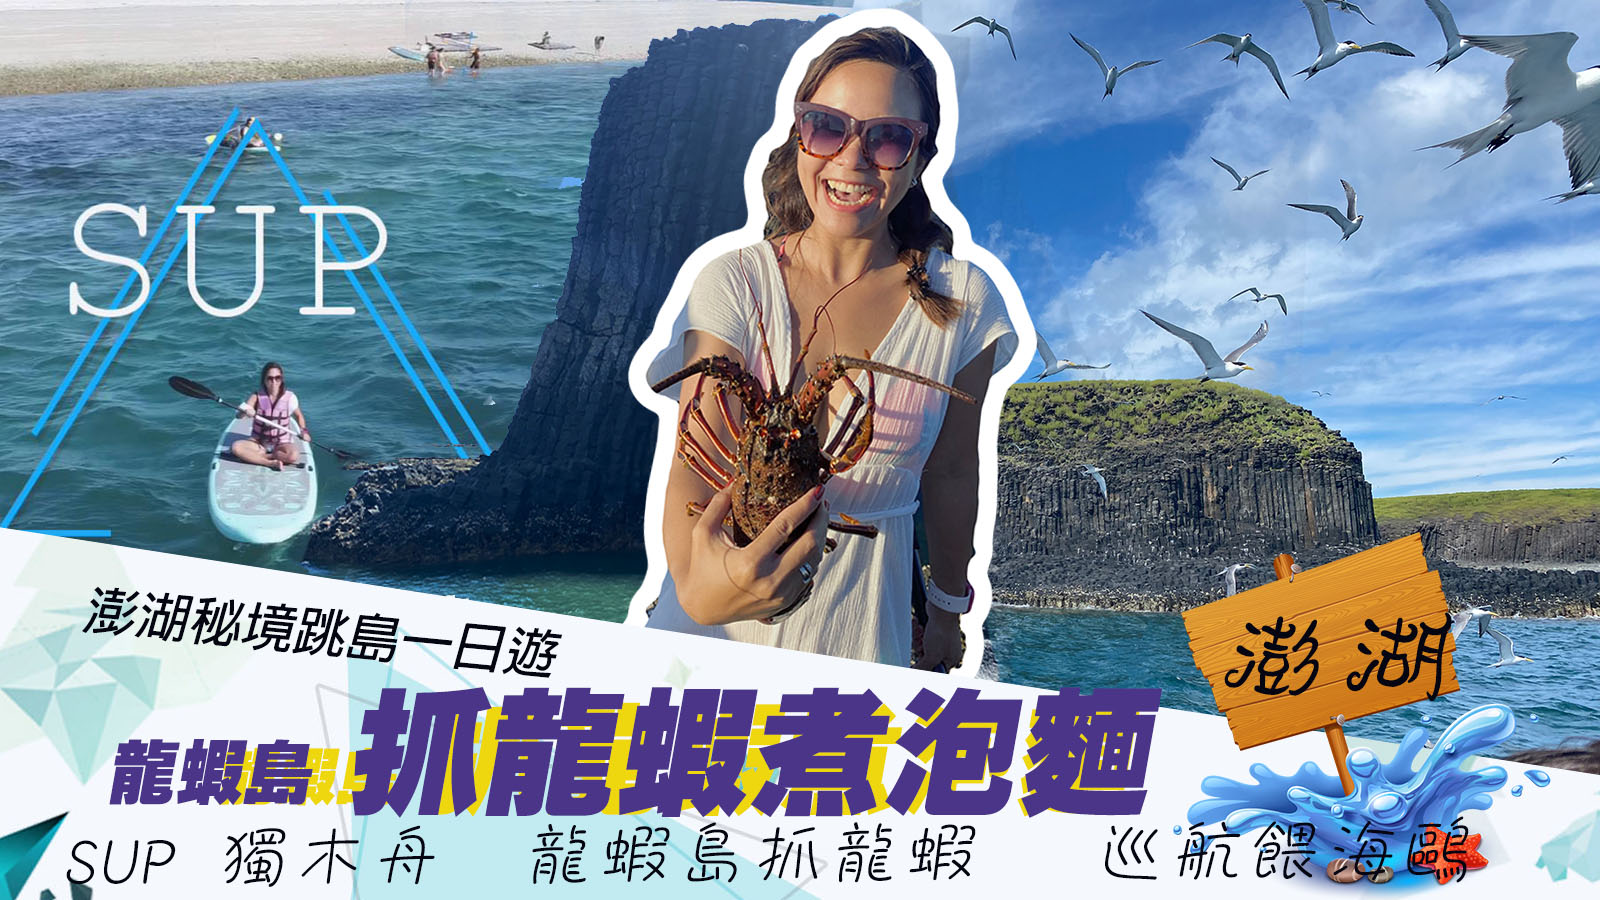 2020 澎湖自由行 Klook 預定 必玩熱門旅遊景點與一日遊行程、景點門票  Klook